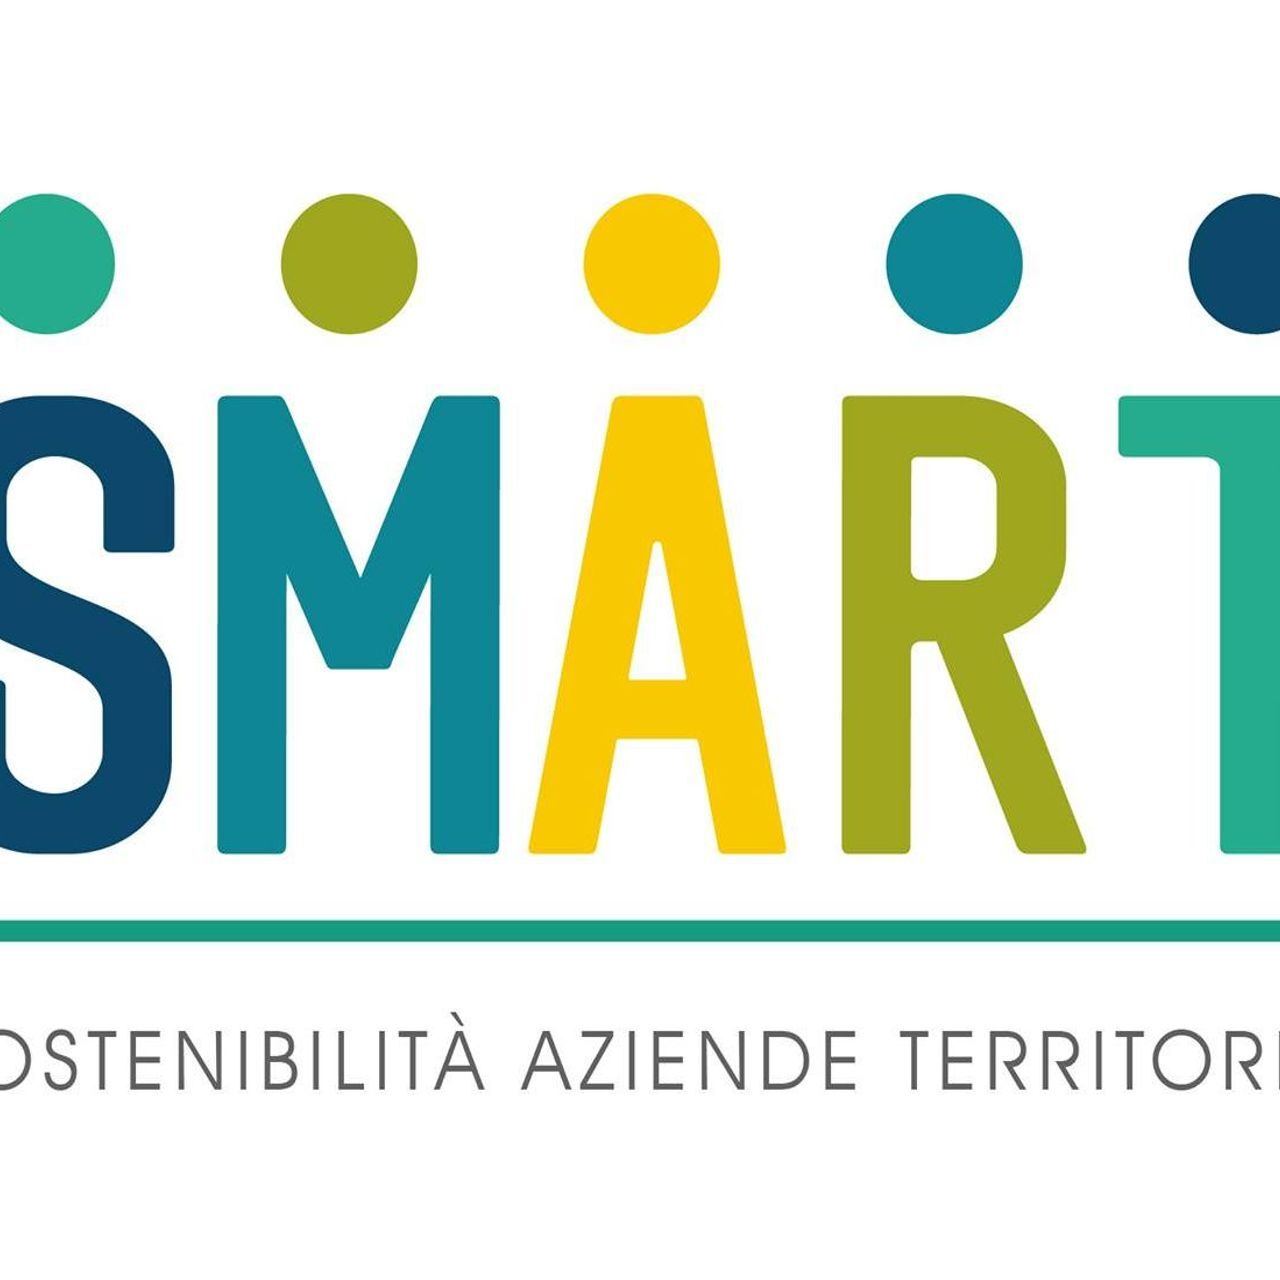 Logotip projekta SMART (Trajnostne strategije in odgovorni poslovni modeli na čezmejnem ozemlju)